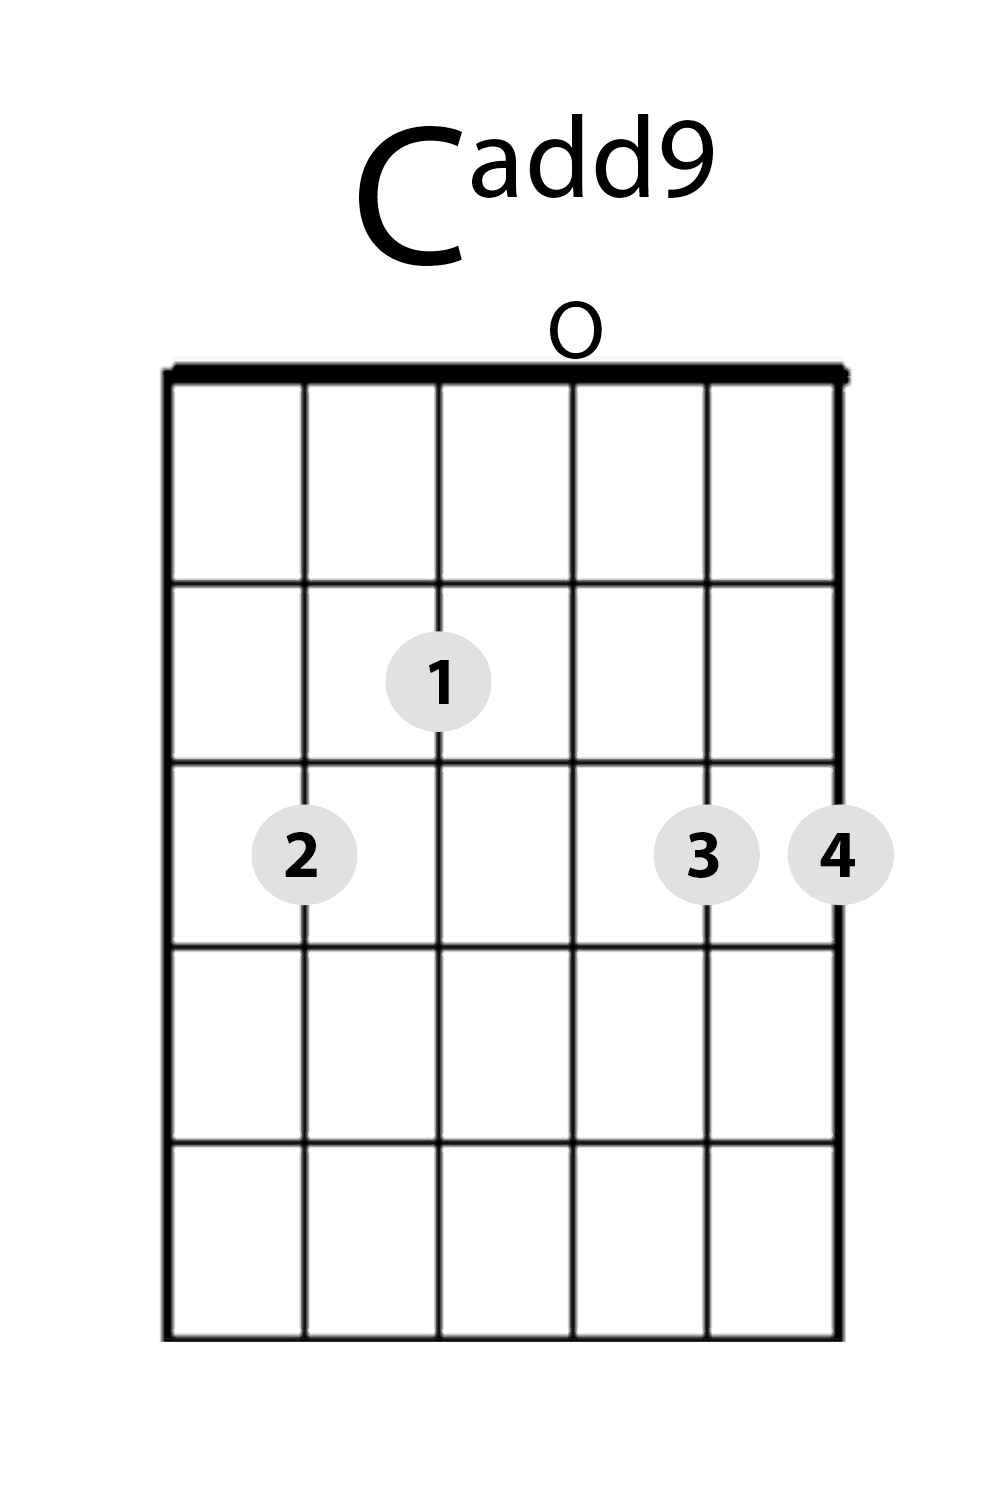 Cadd9 guitar chord